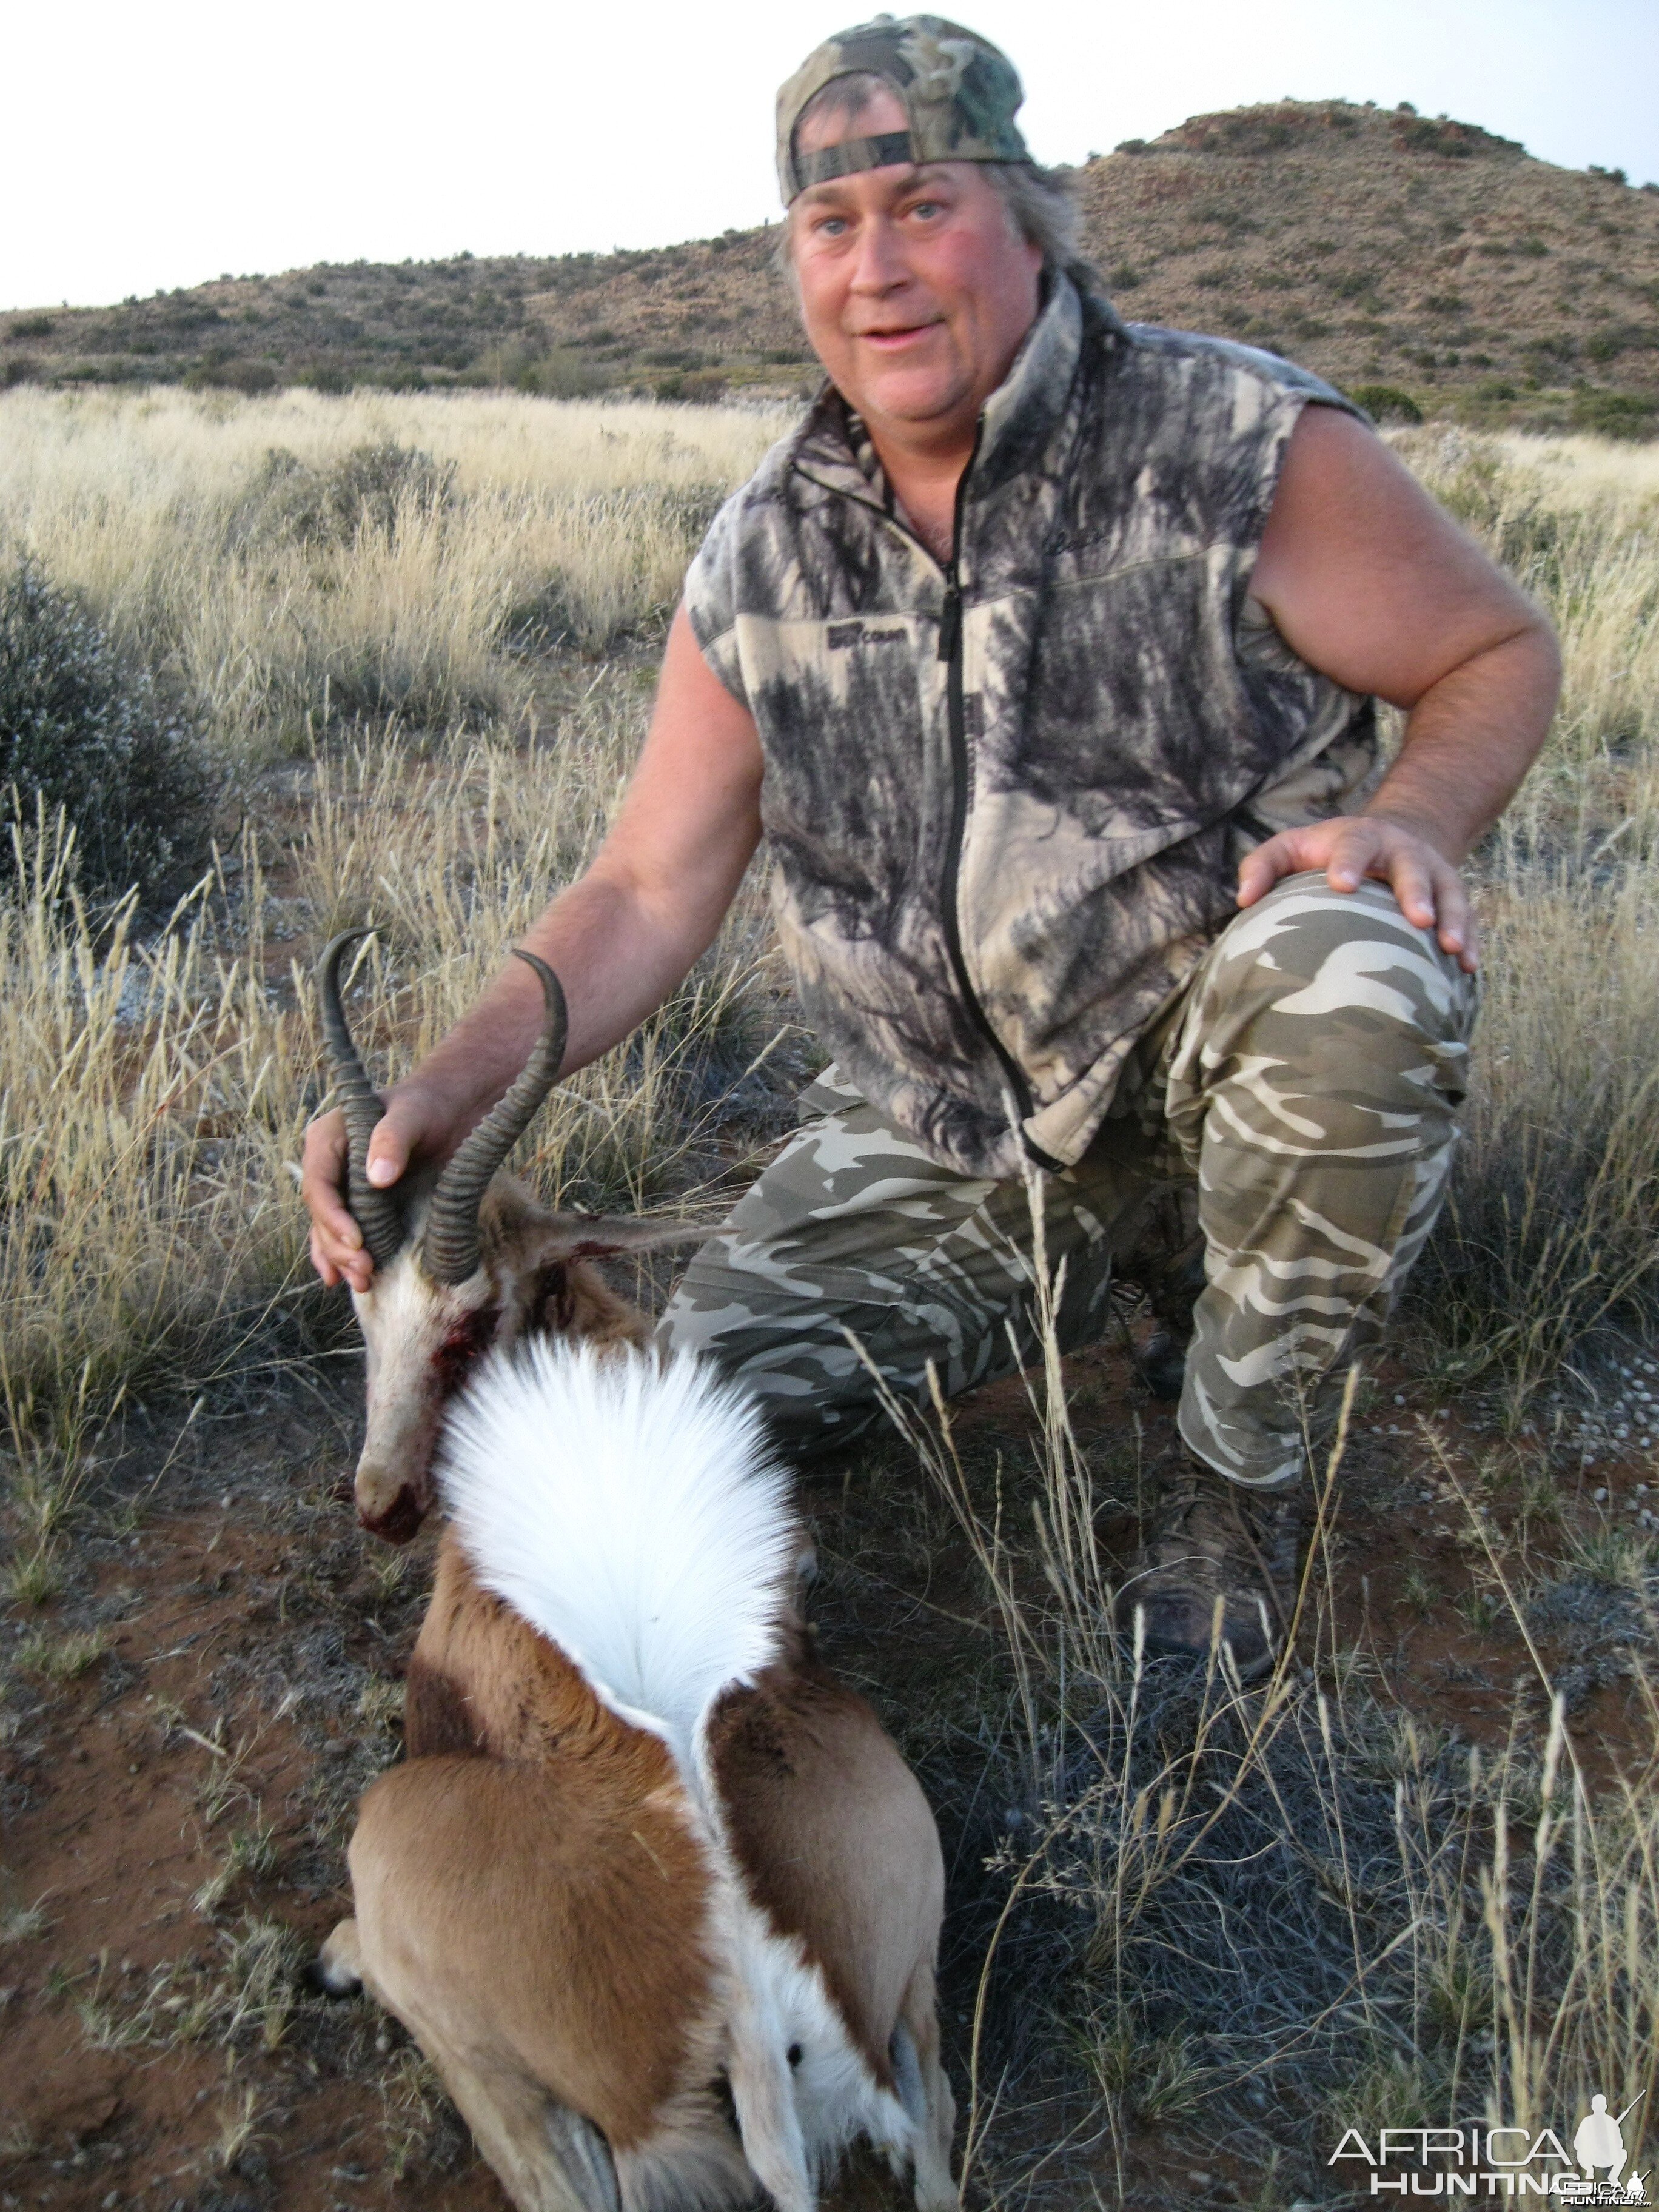 Second Common Springbok